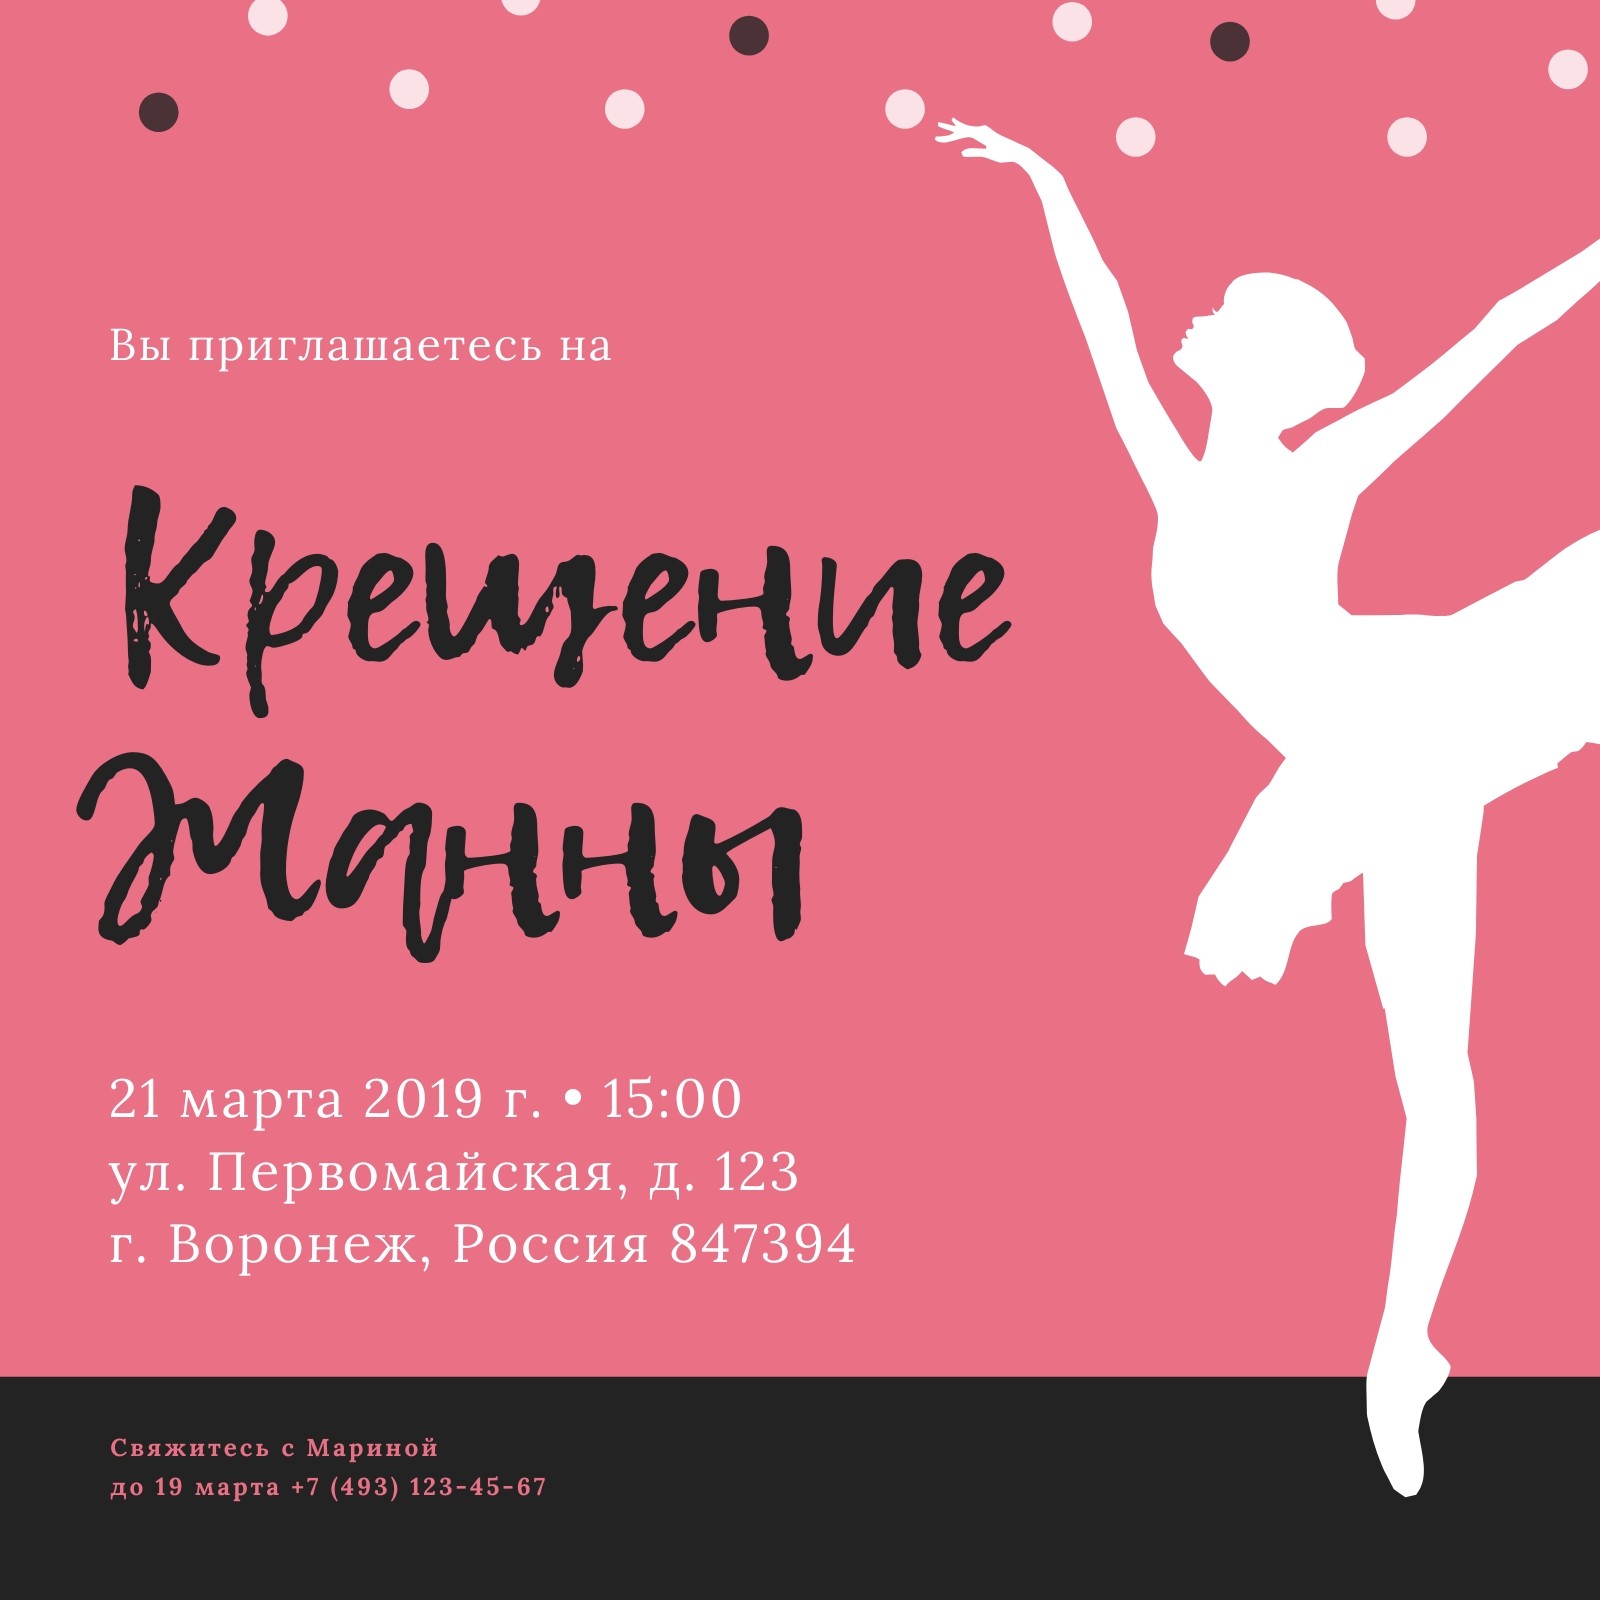 Приглашение на мероприятия в Воронеже